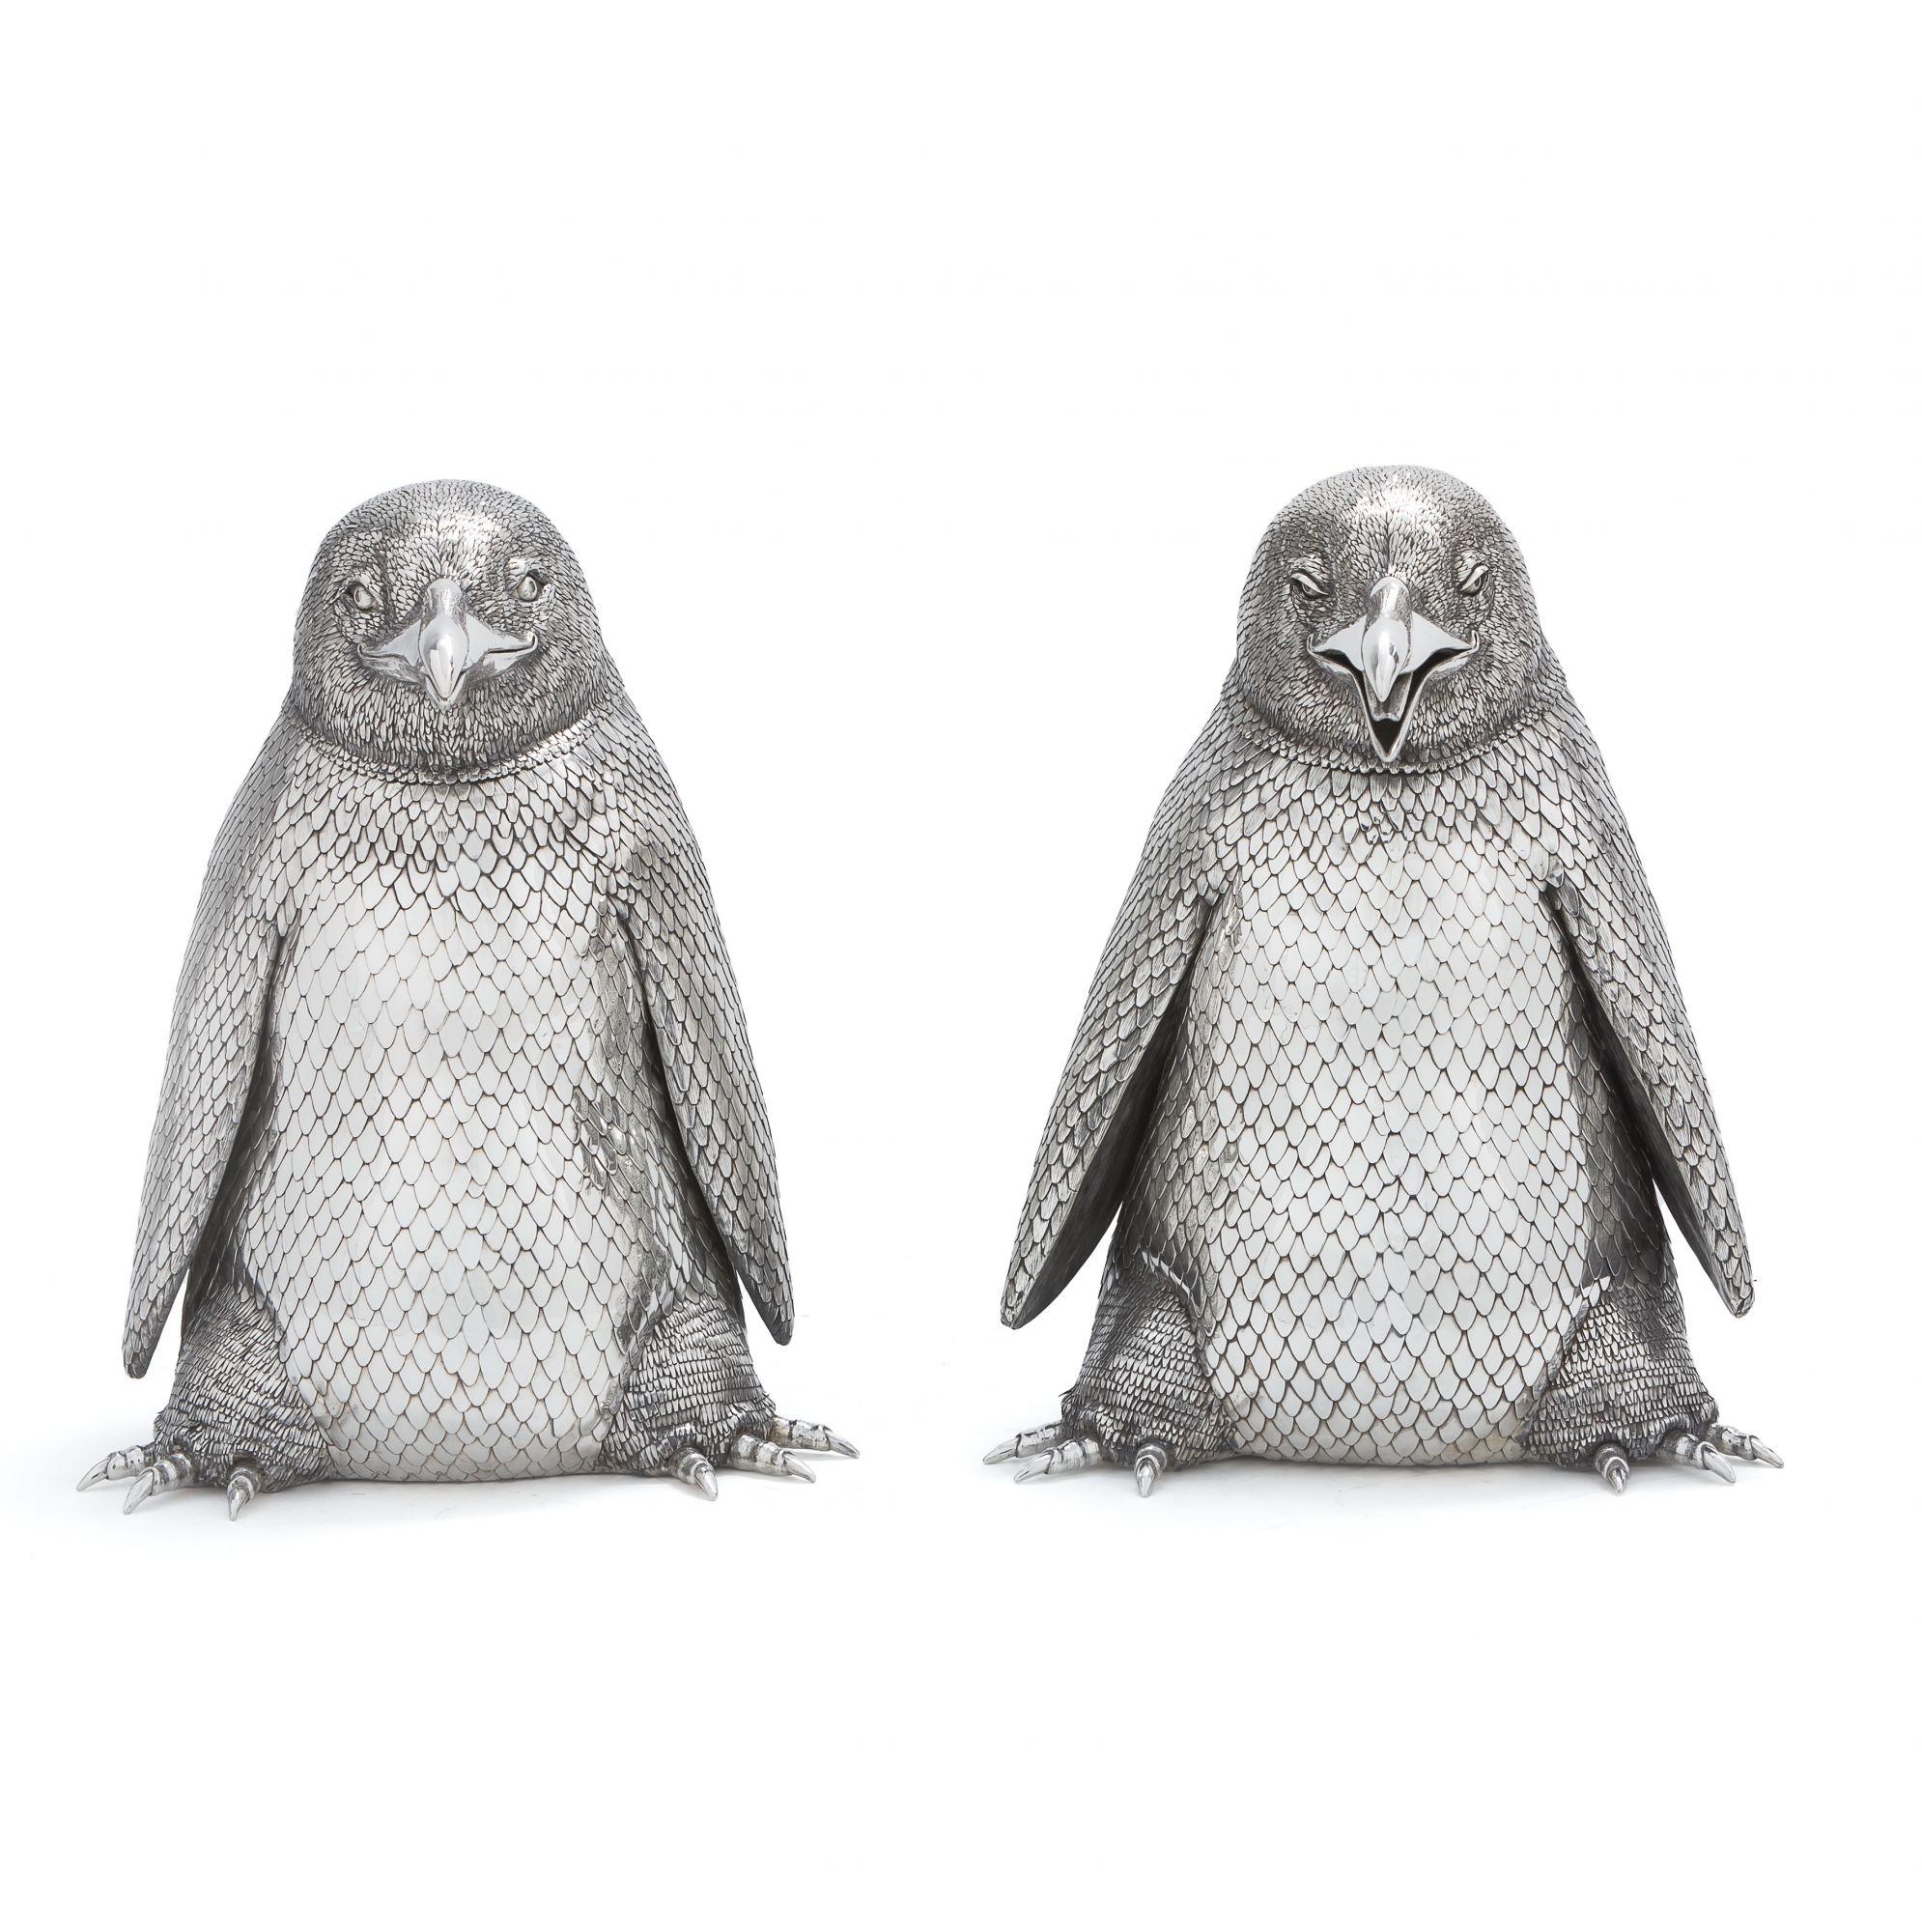 Ein Paar realistisch modellierter männlicher und weiblicher Pinguine, deren Scharnierköpfe sich öffnen lassen, um ein Flaschenfach freizugeben Mario Buccellati war einer der bemerkenswertesten italienischen Juweliere des 20. Jahrhunderts. Seine